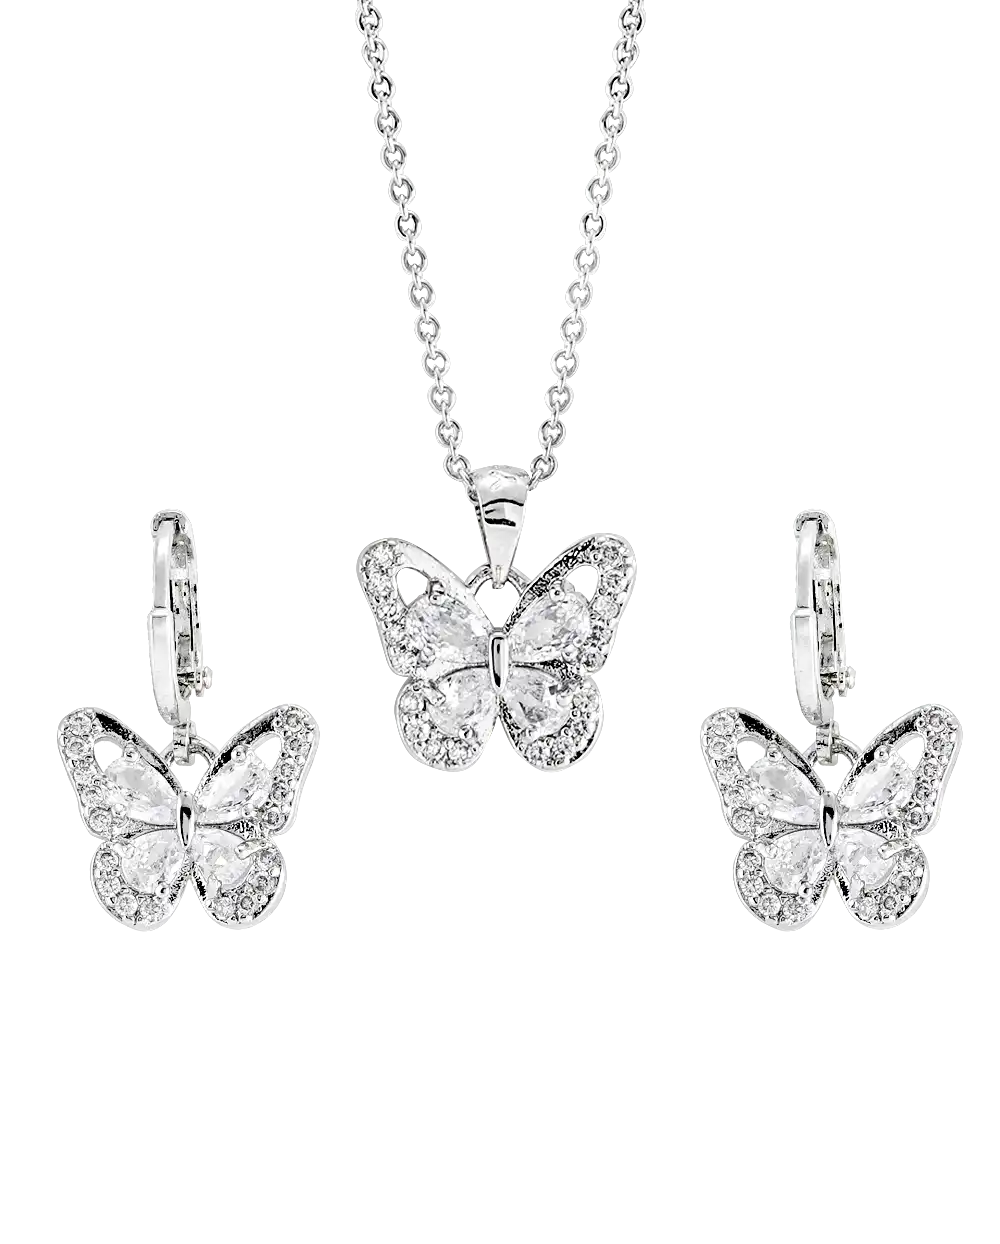 با خرید نیم ست زنانه نقره روس طرح پروانه مدل 1479 به همراه ارسال رایگان به یک مجموعه جواهرات عالی زنانه دستری دارید | خرید انلاین نیم ست گردبند و گوشواره